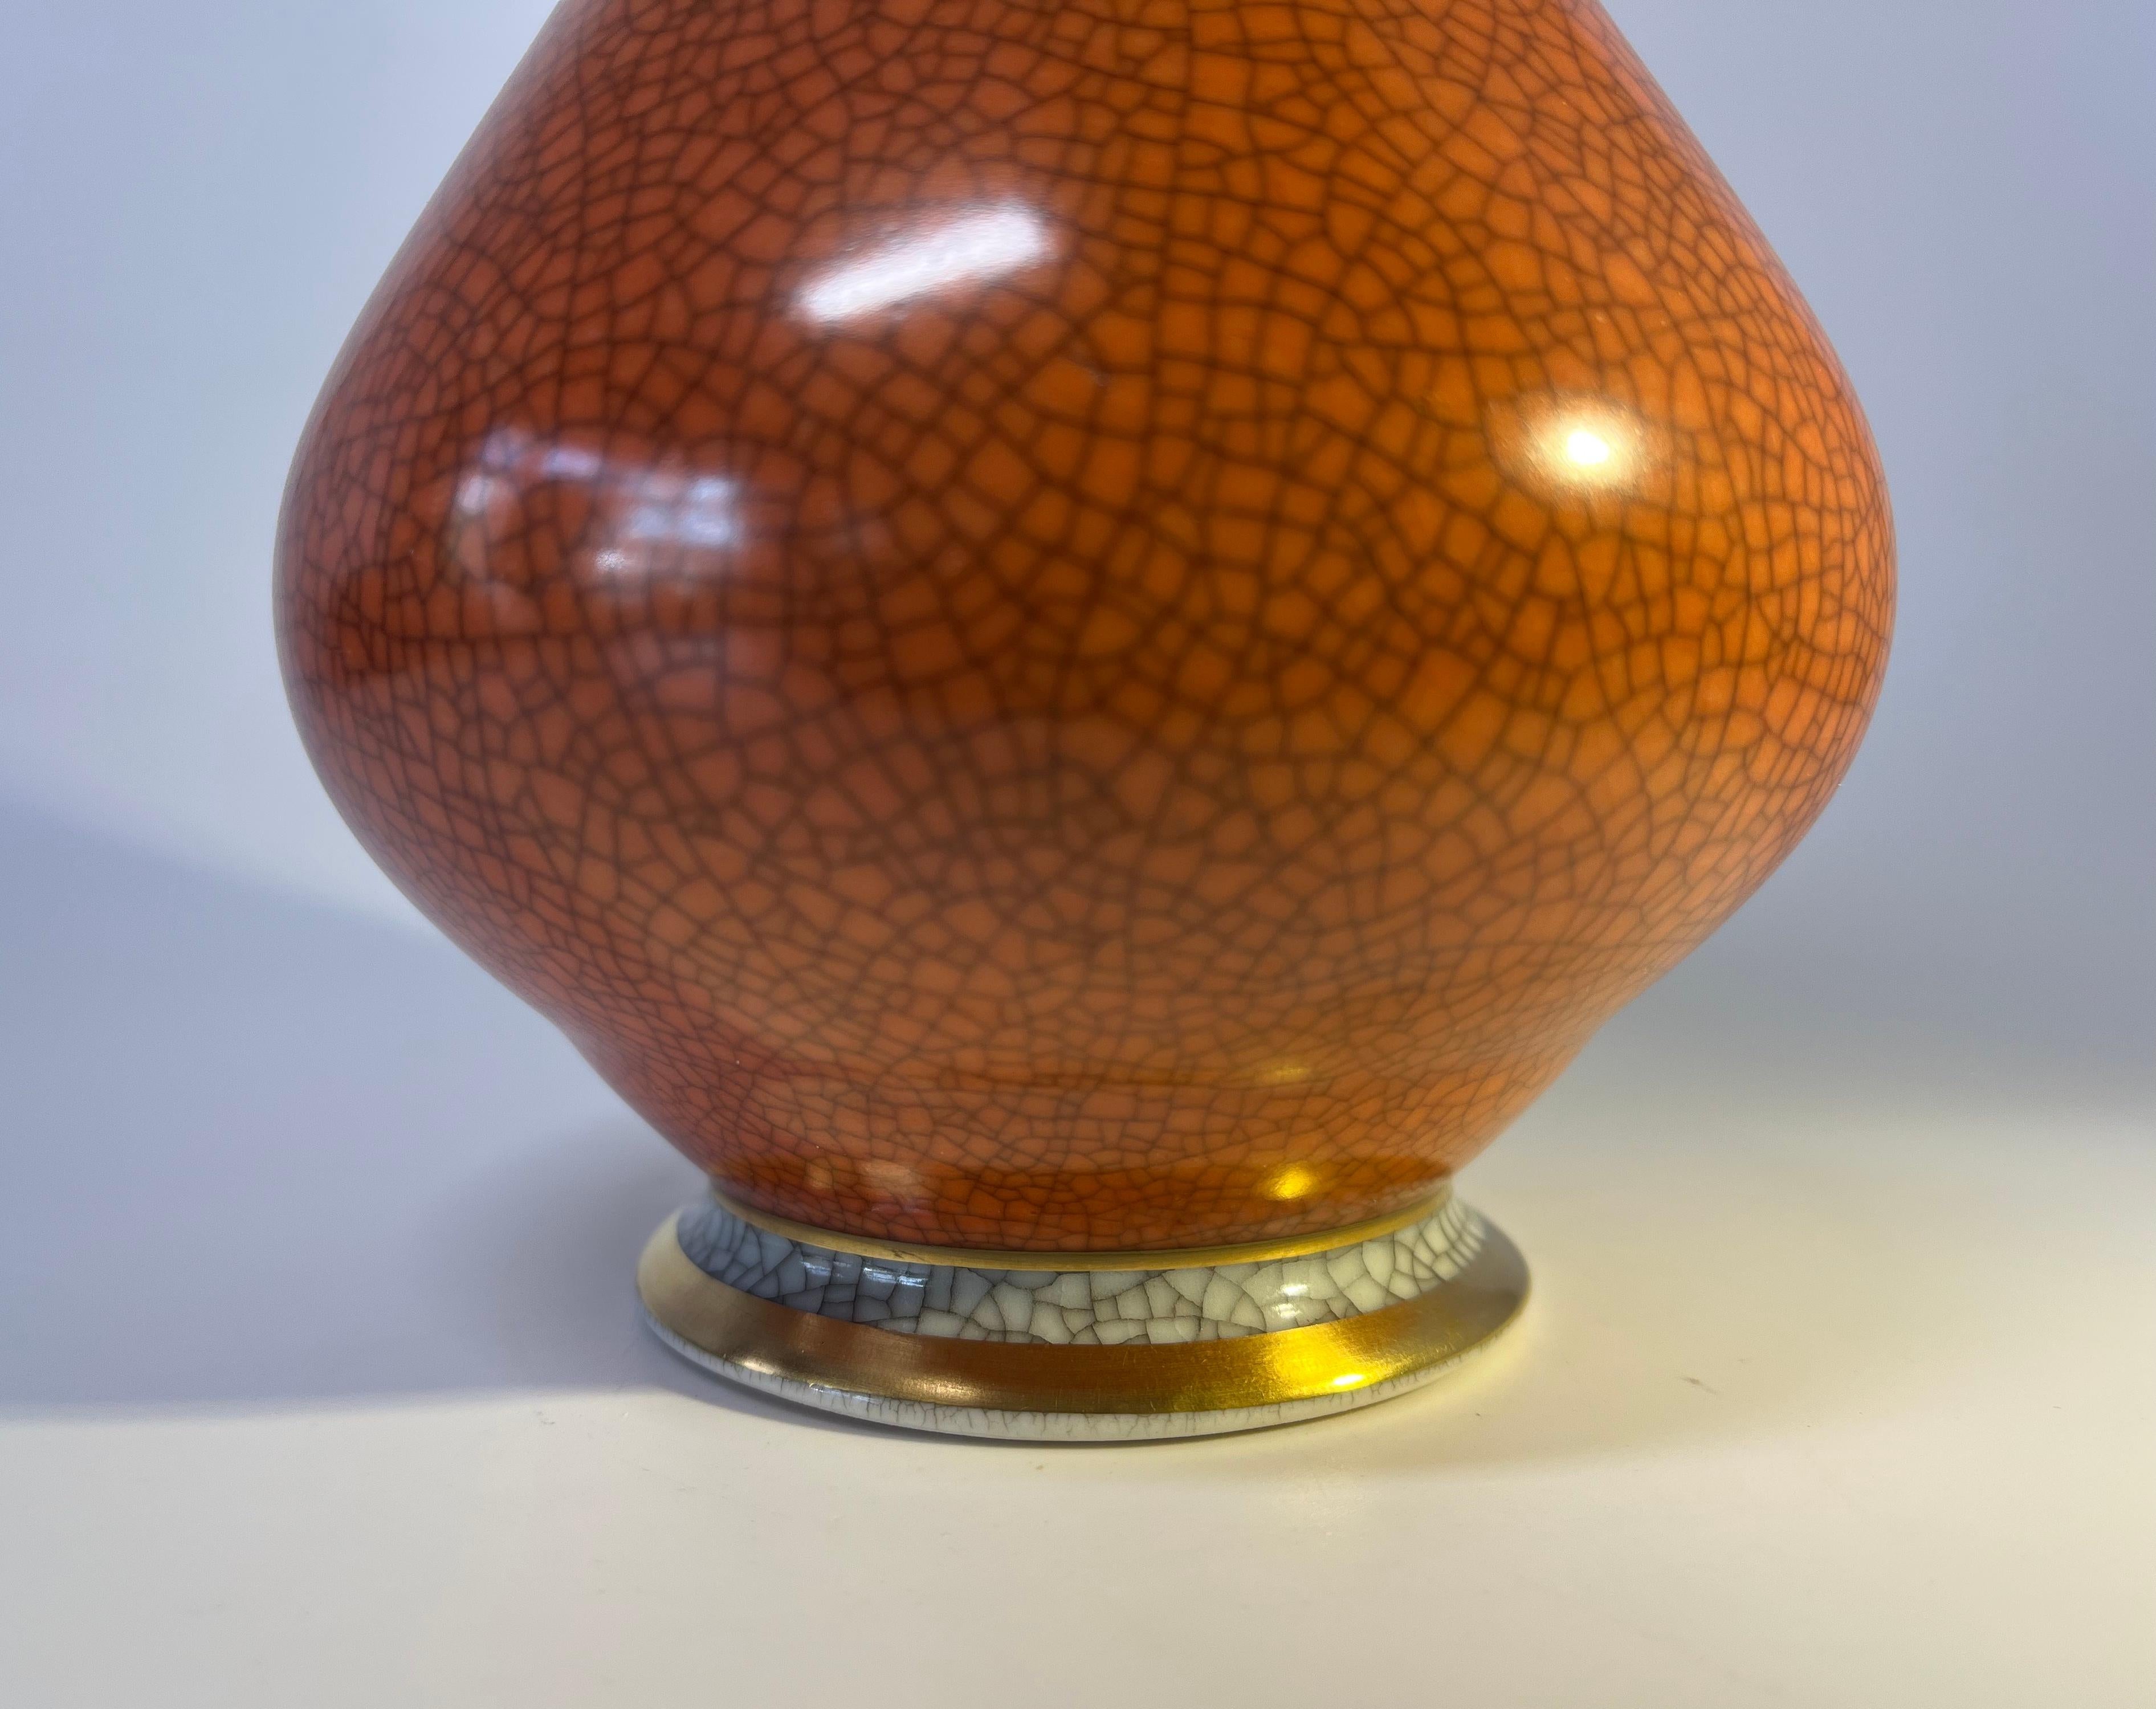 Danish Royal Copenhagen Terracotta Crackle Glazed Vase, Gilded Banding Decoration #3060 For Sale